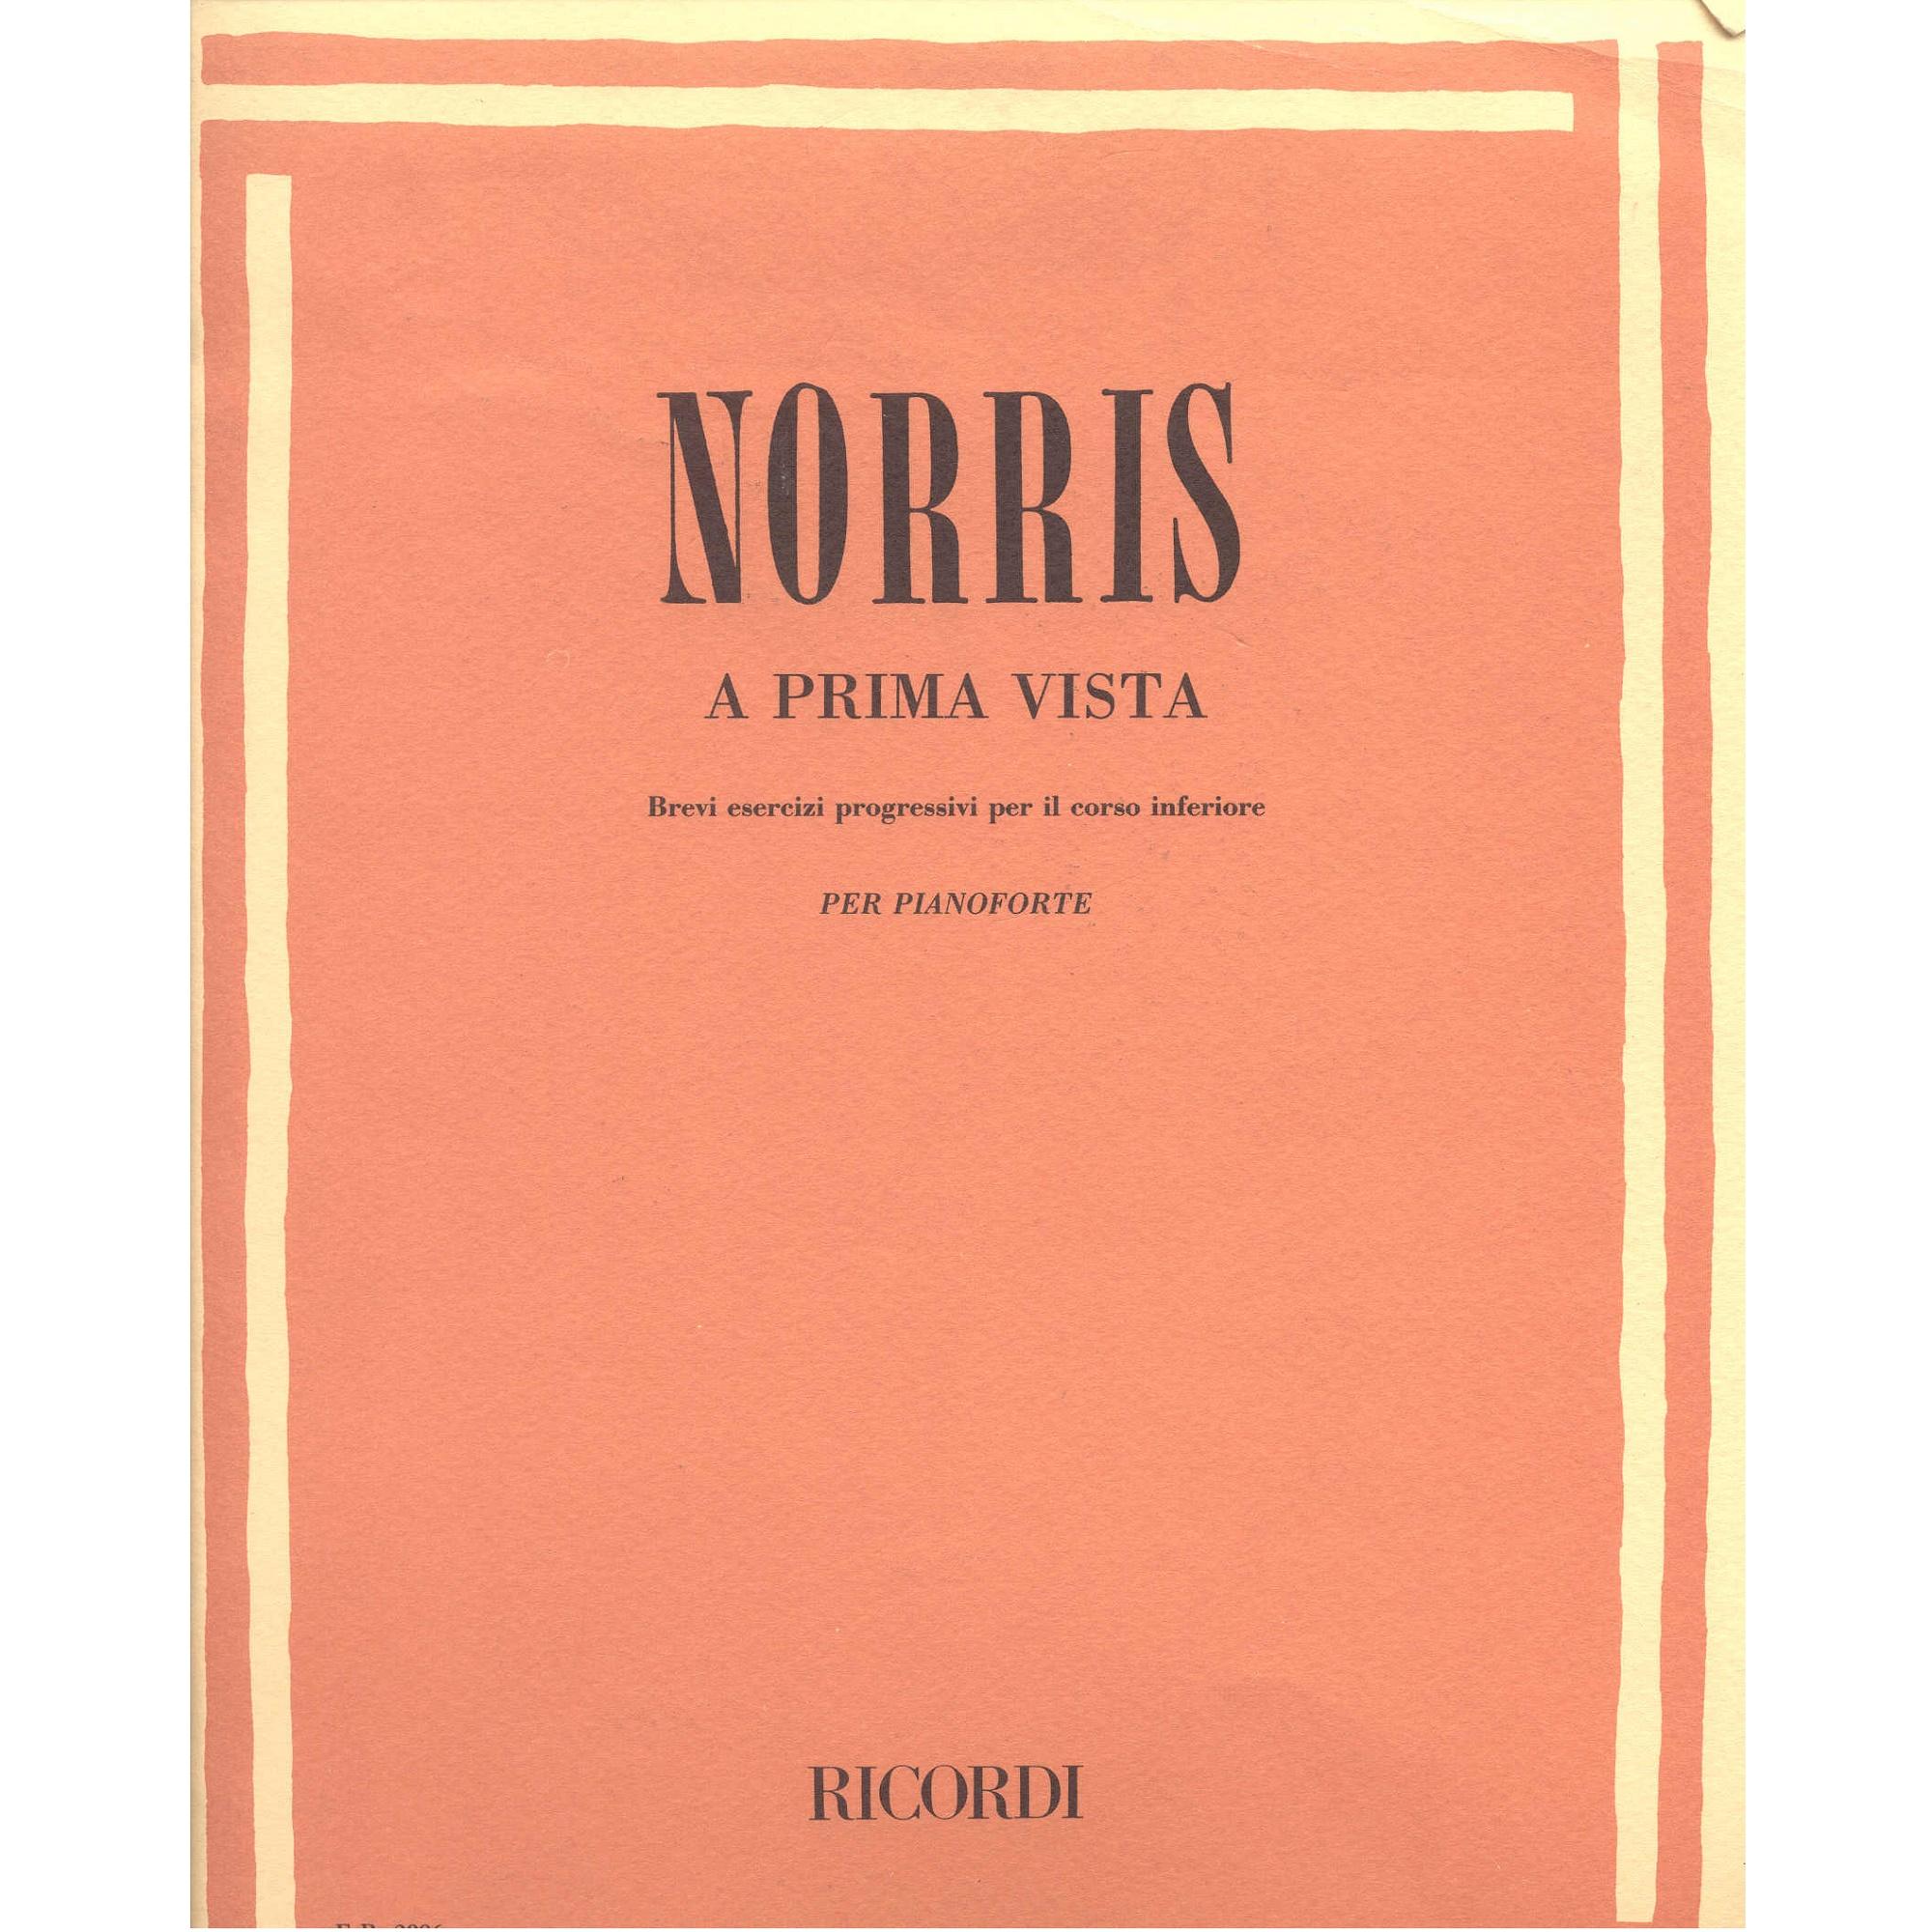 Norris A PRIMA VISTA Brevi esercizi progressivi per il corso inferiore per pianoforte - Ricordi